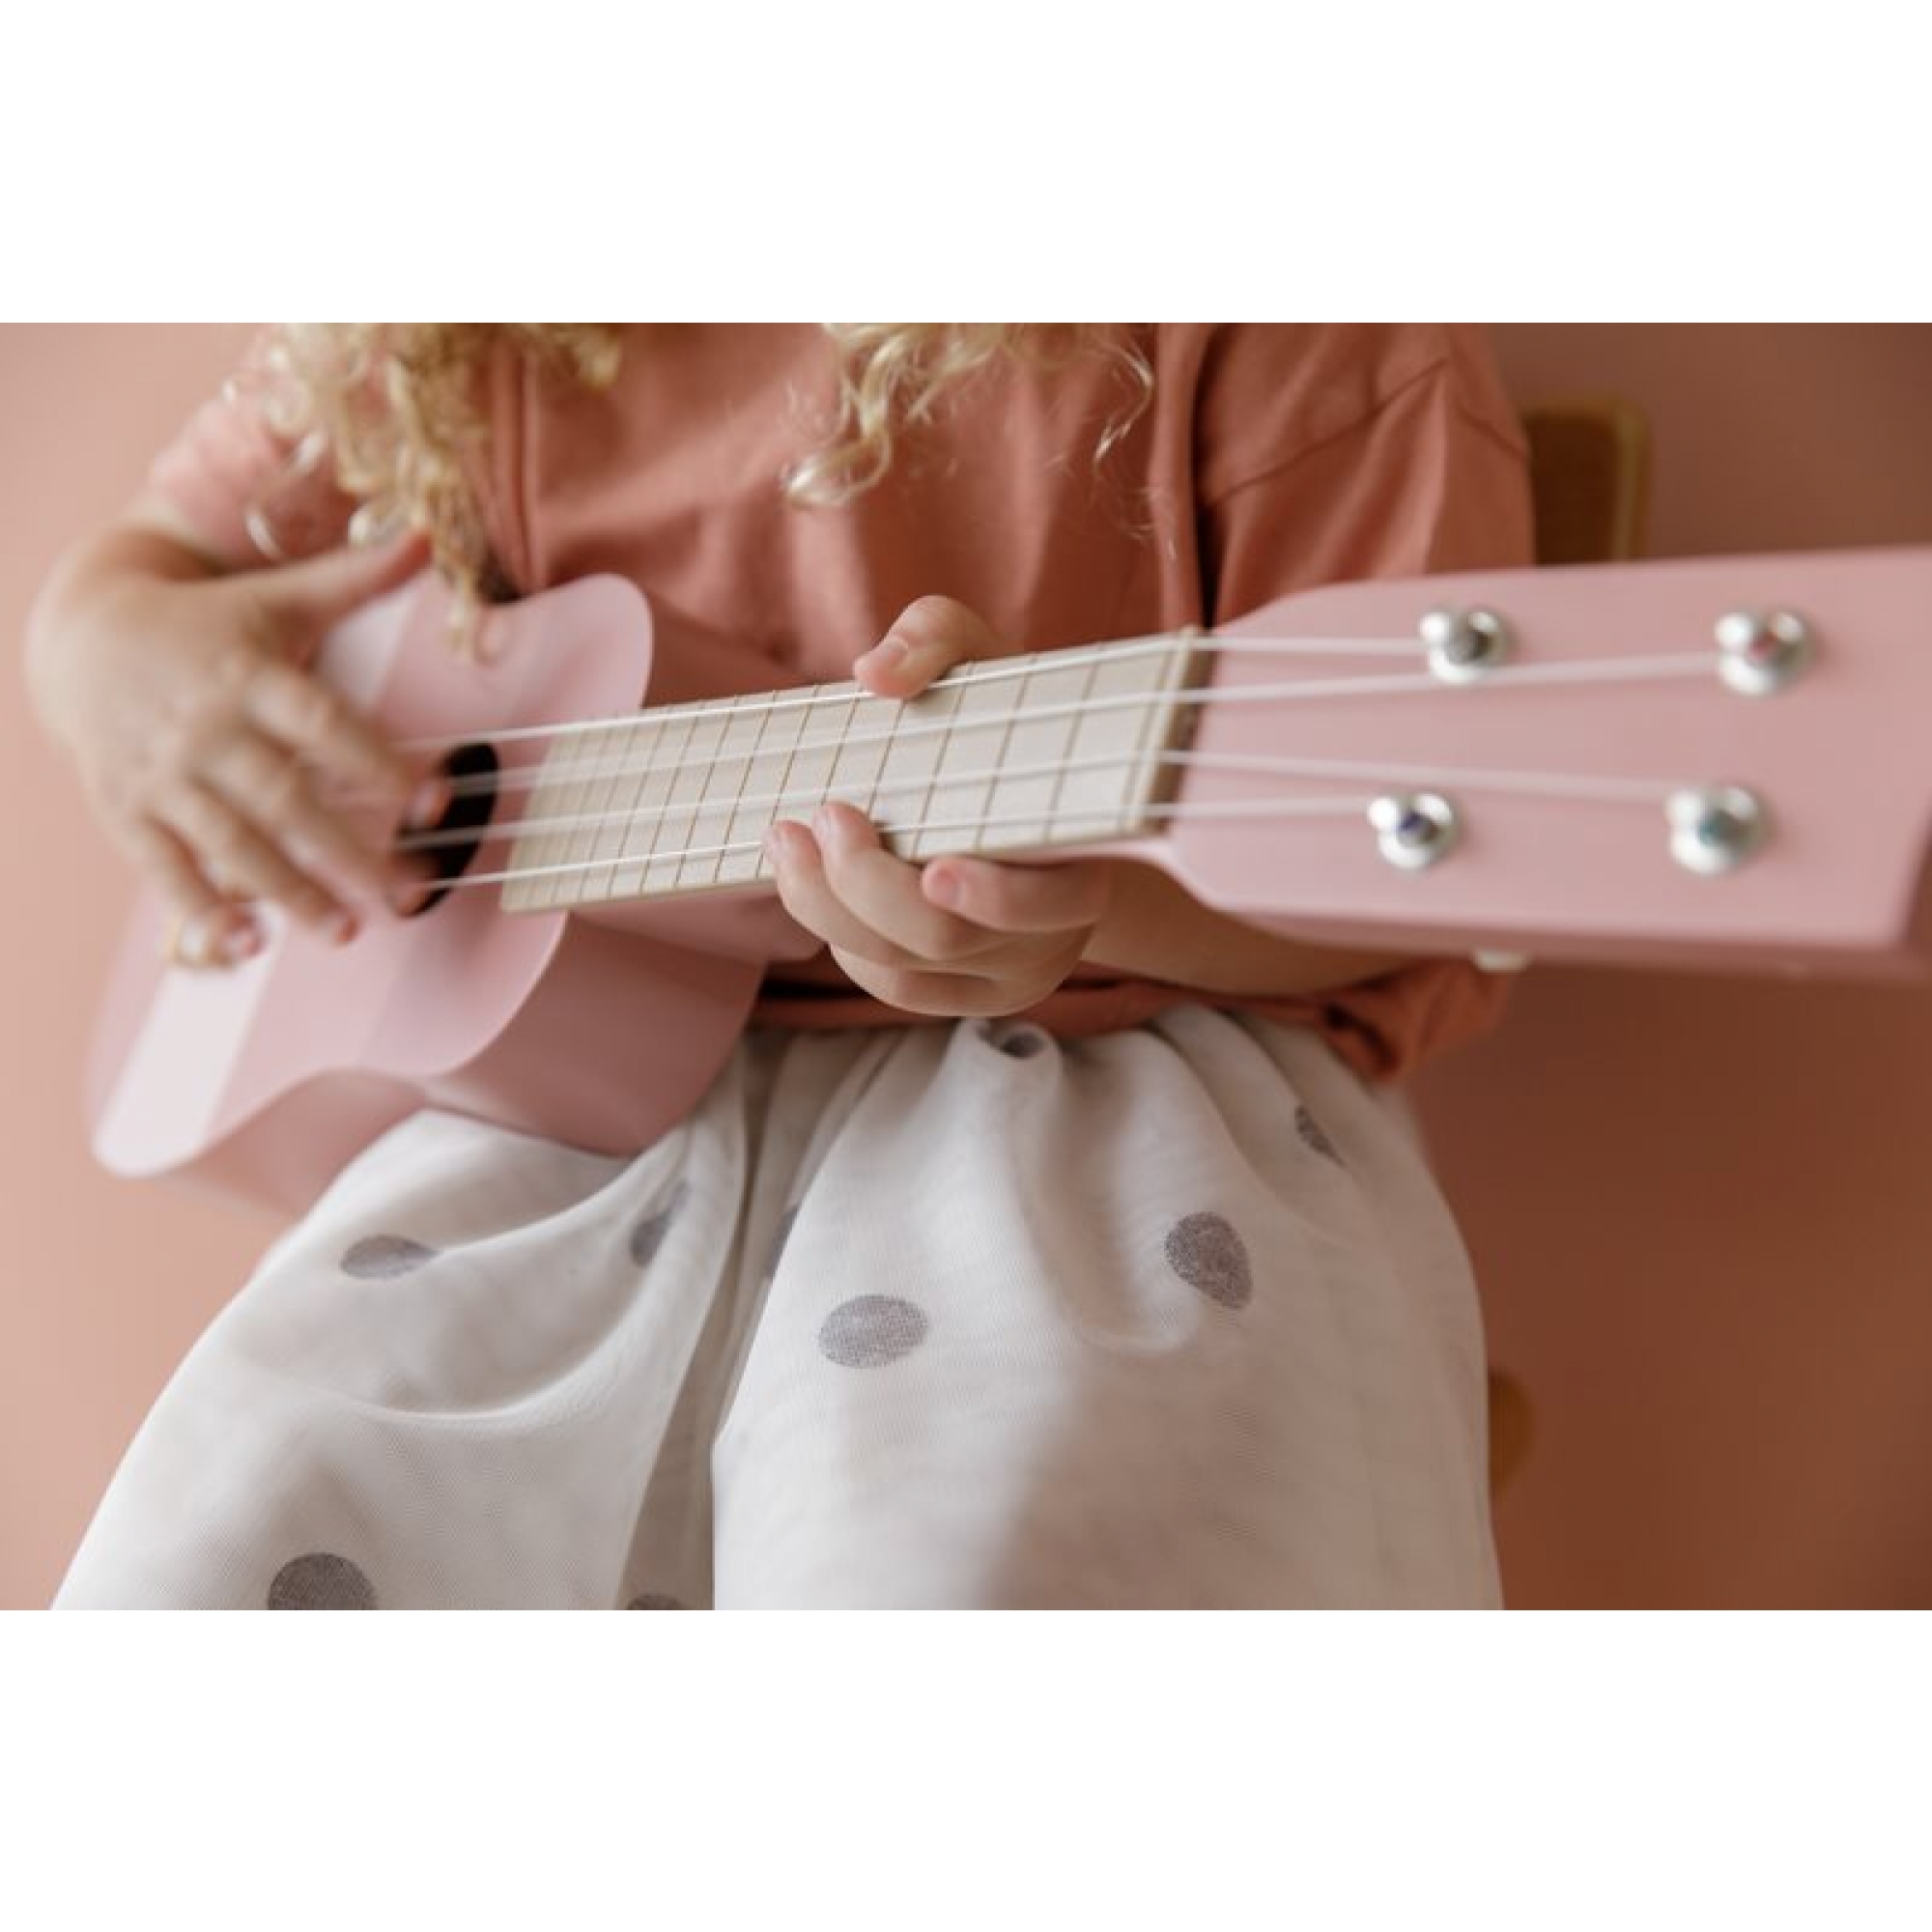 Guitare en bois rose - Made in Bébé